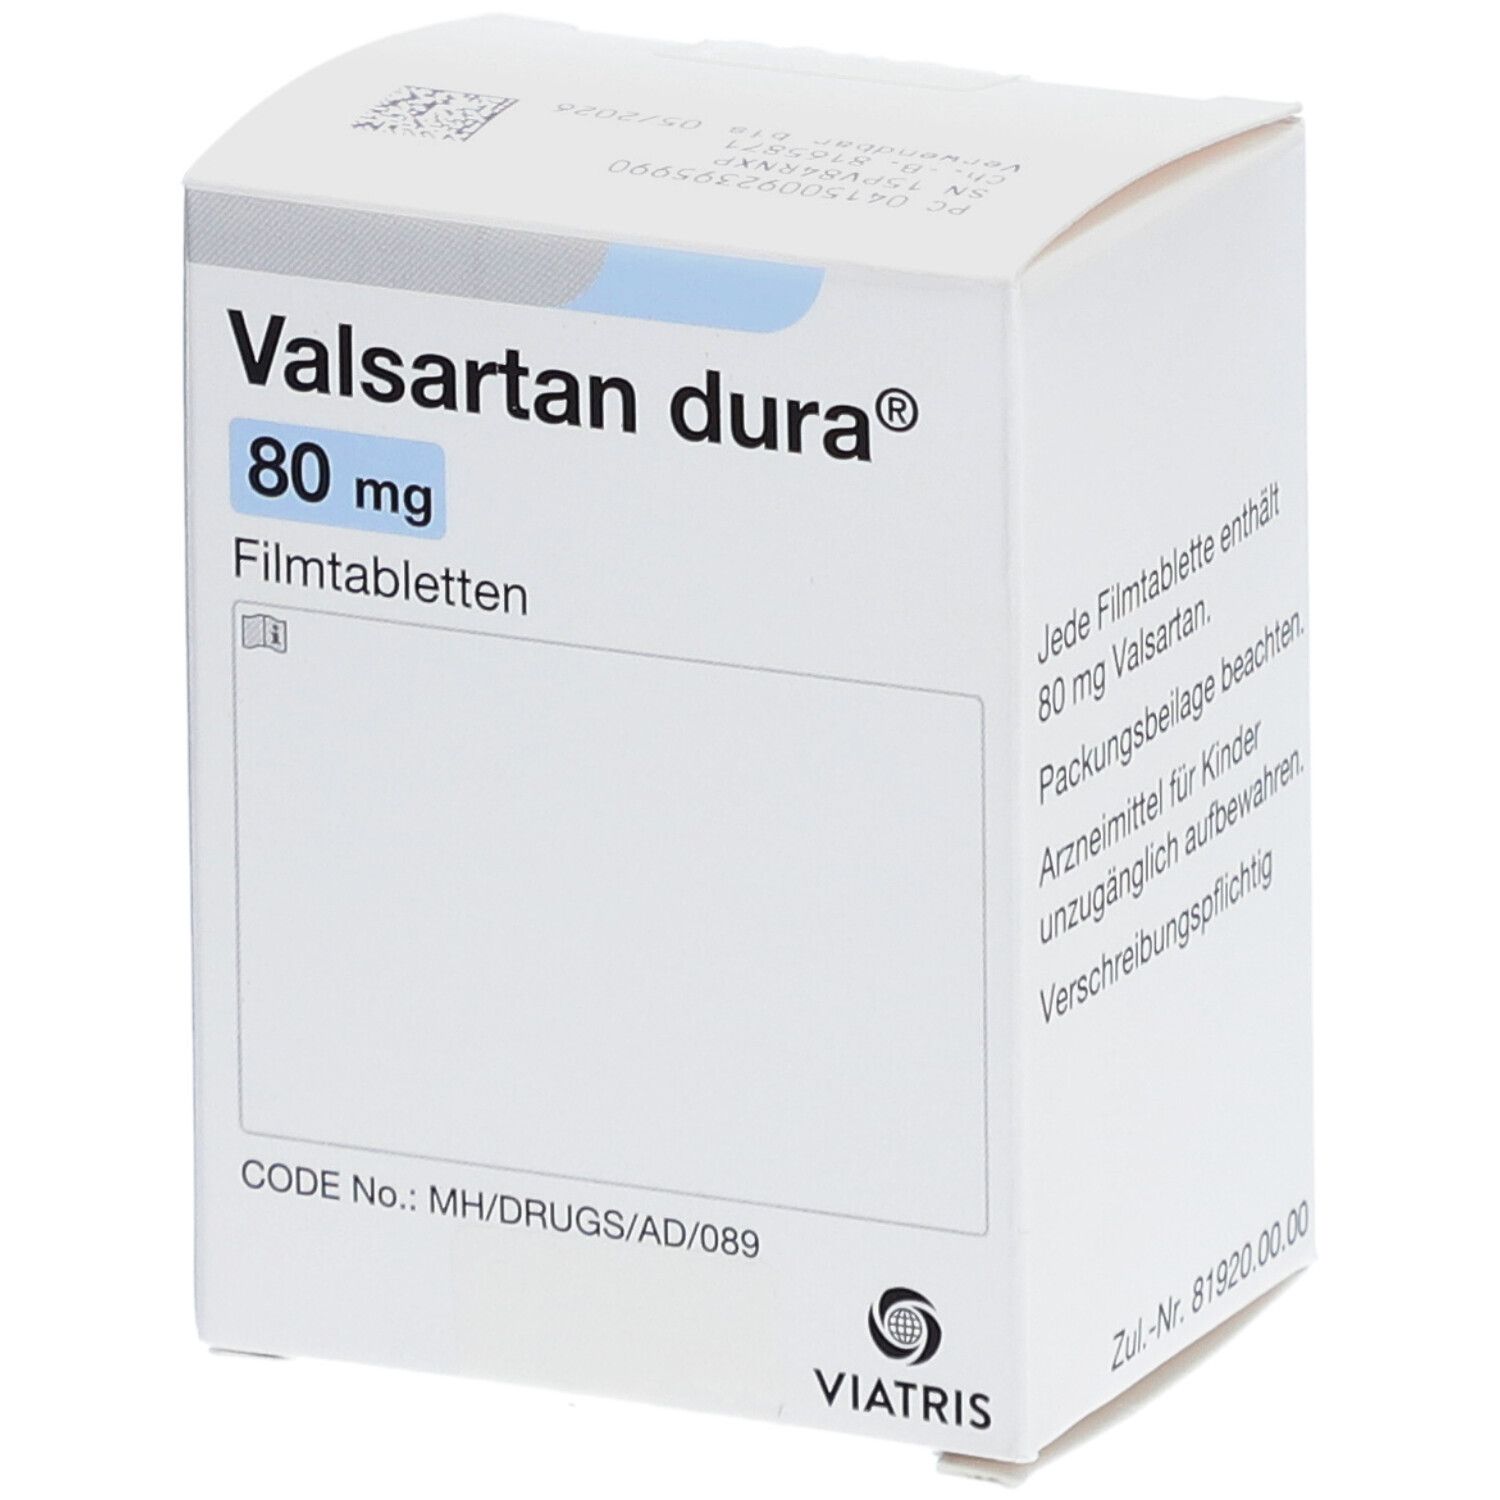 Valsartan dura® 80 mg